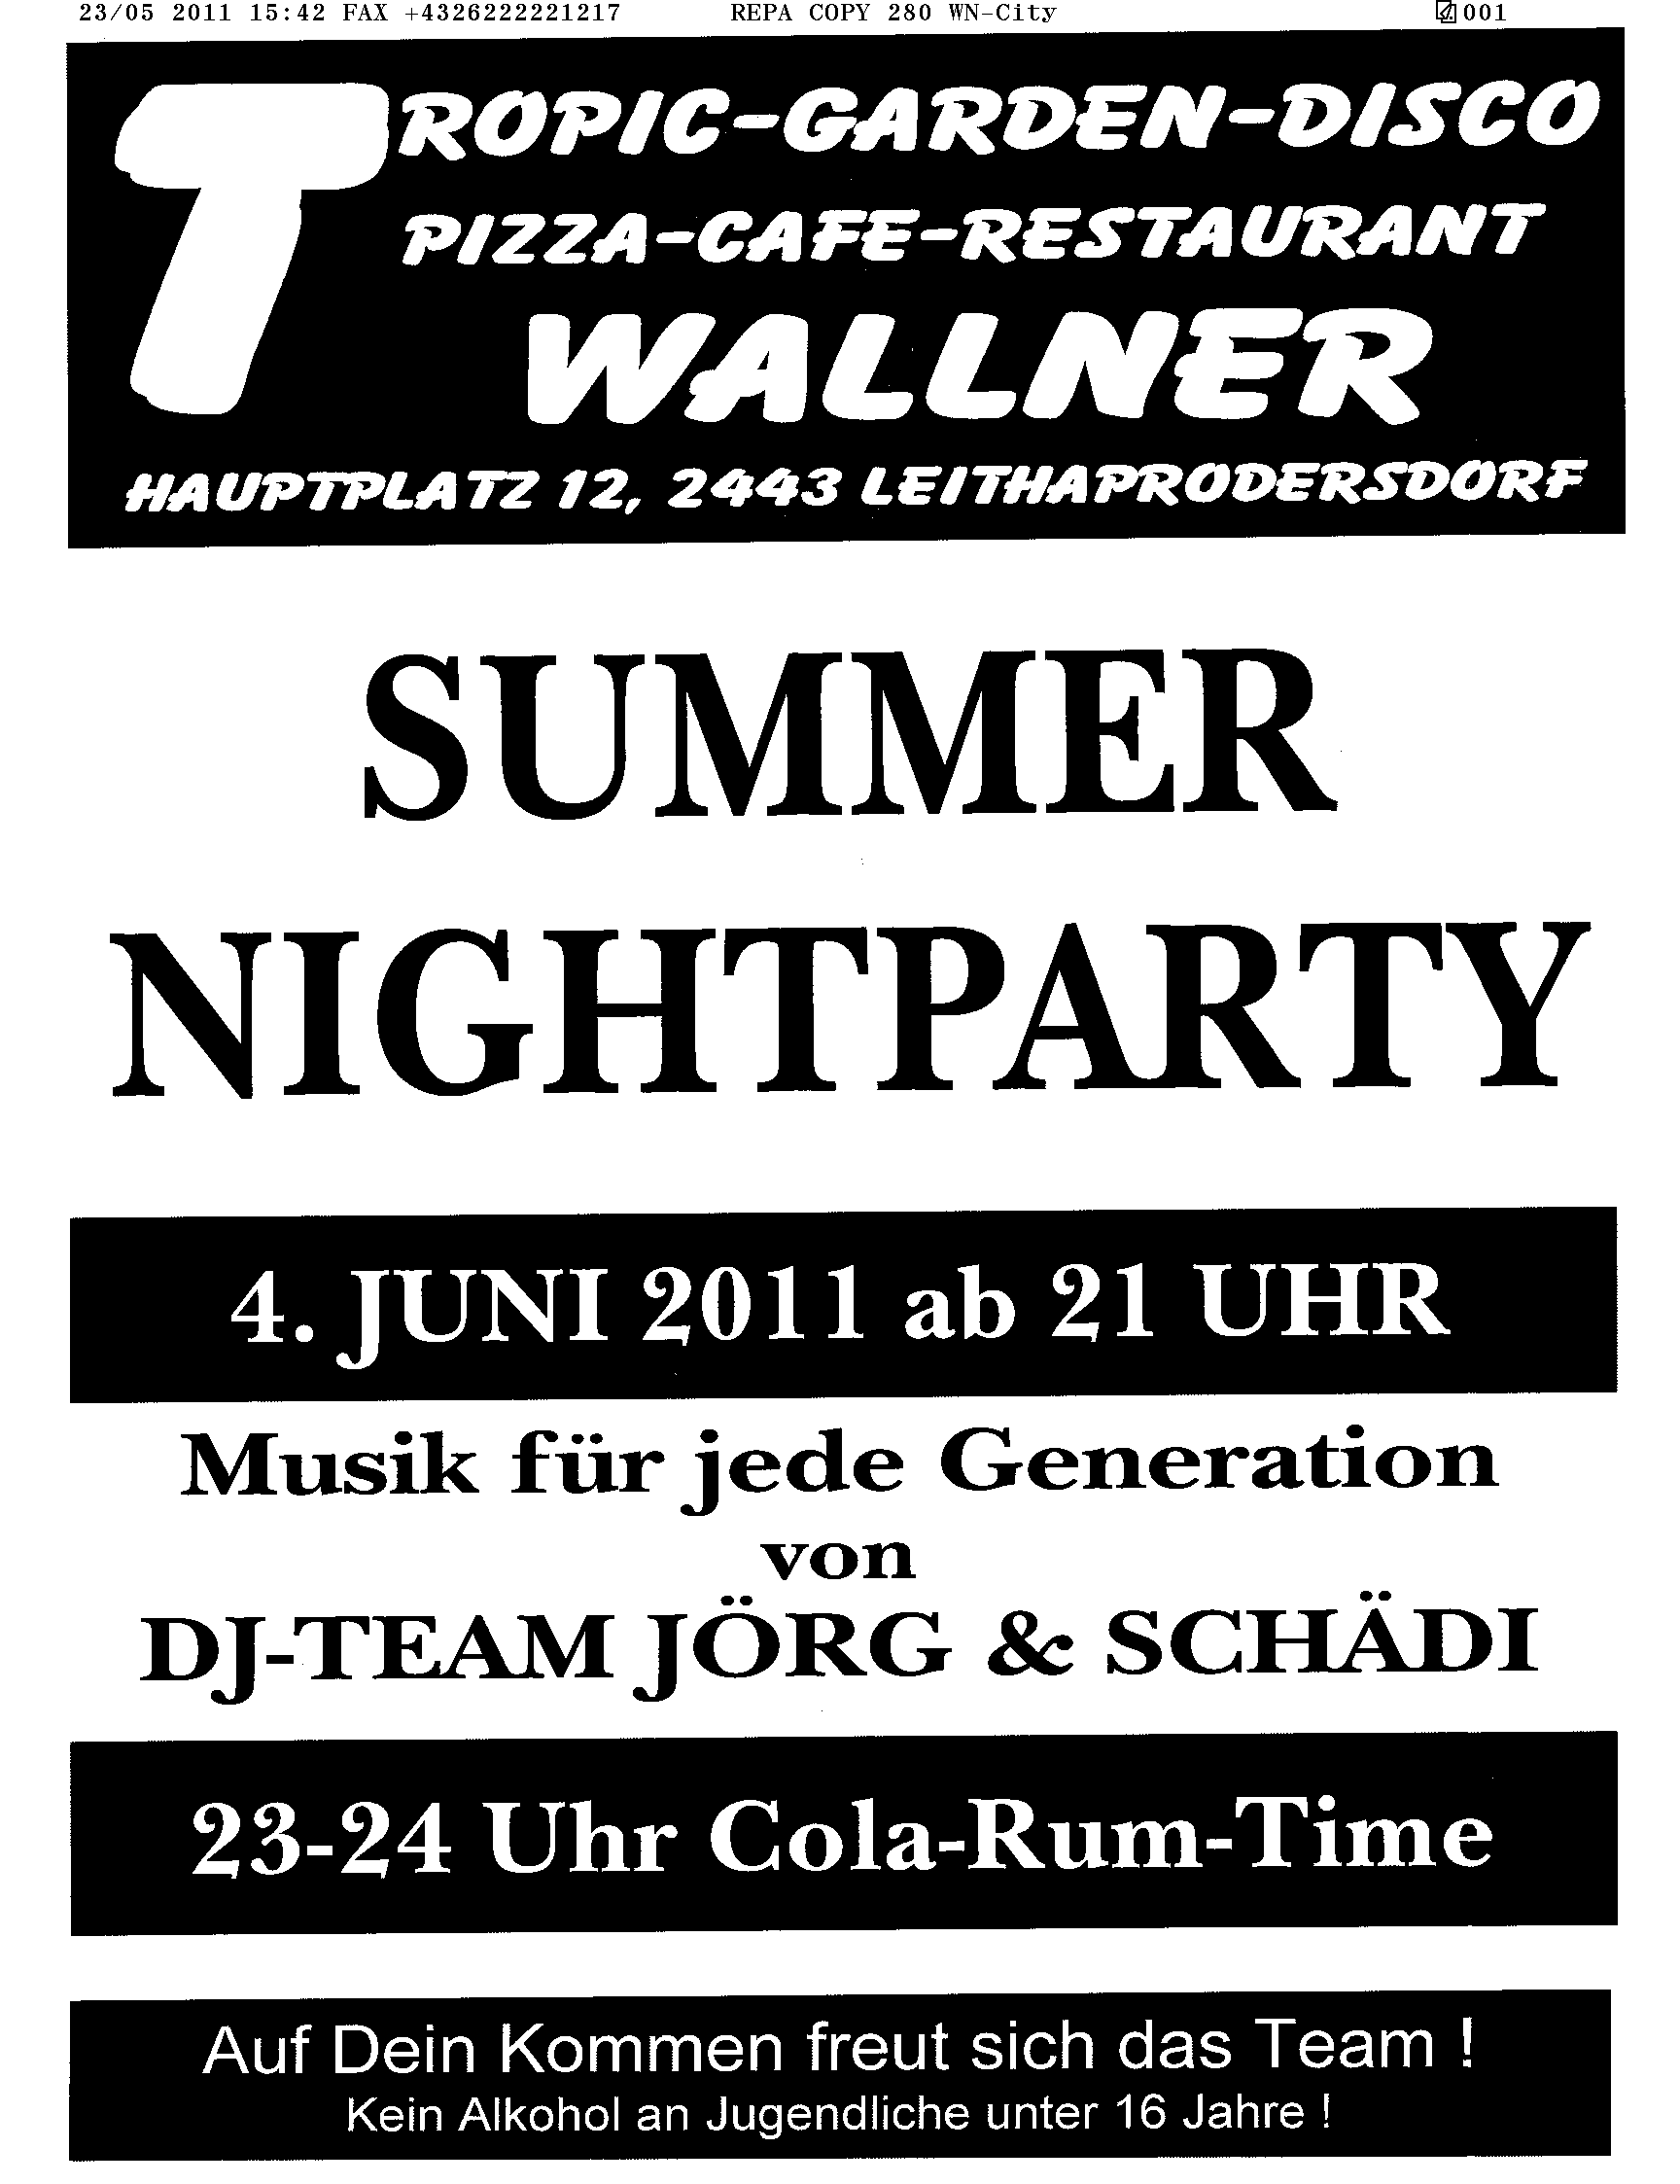 Summernightparty@Tropic Garden -  Disco Wallner